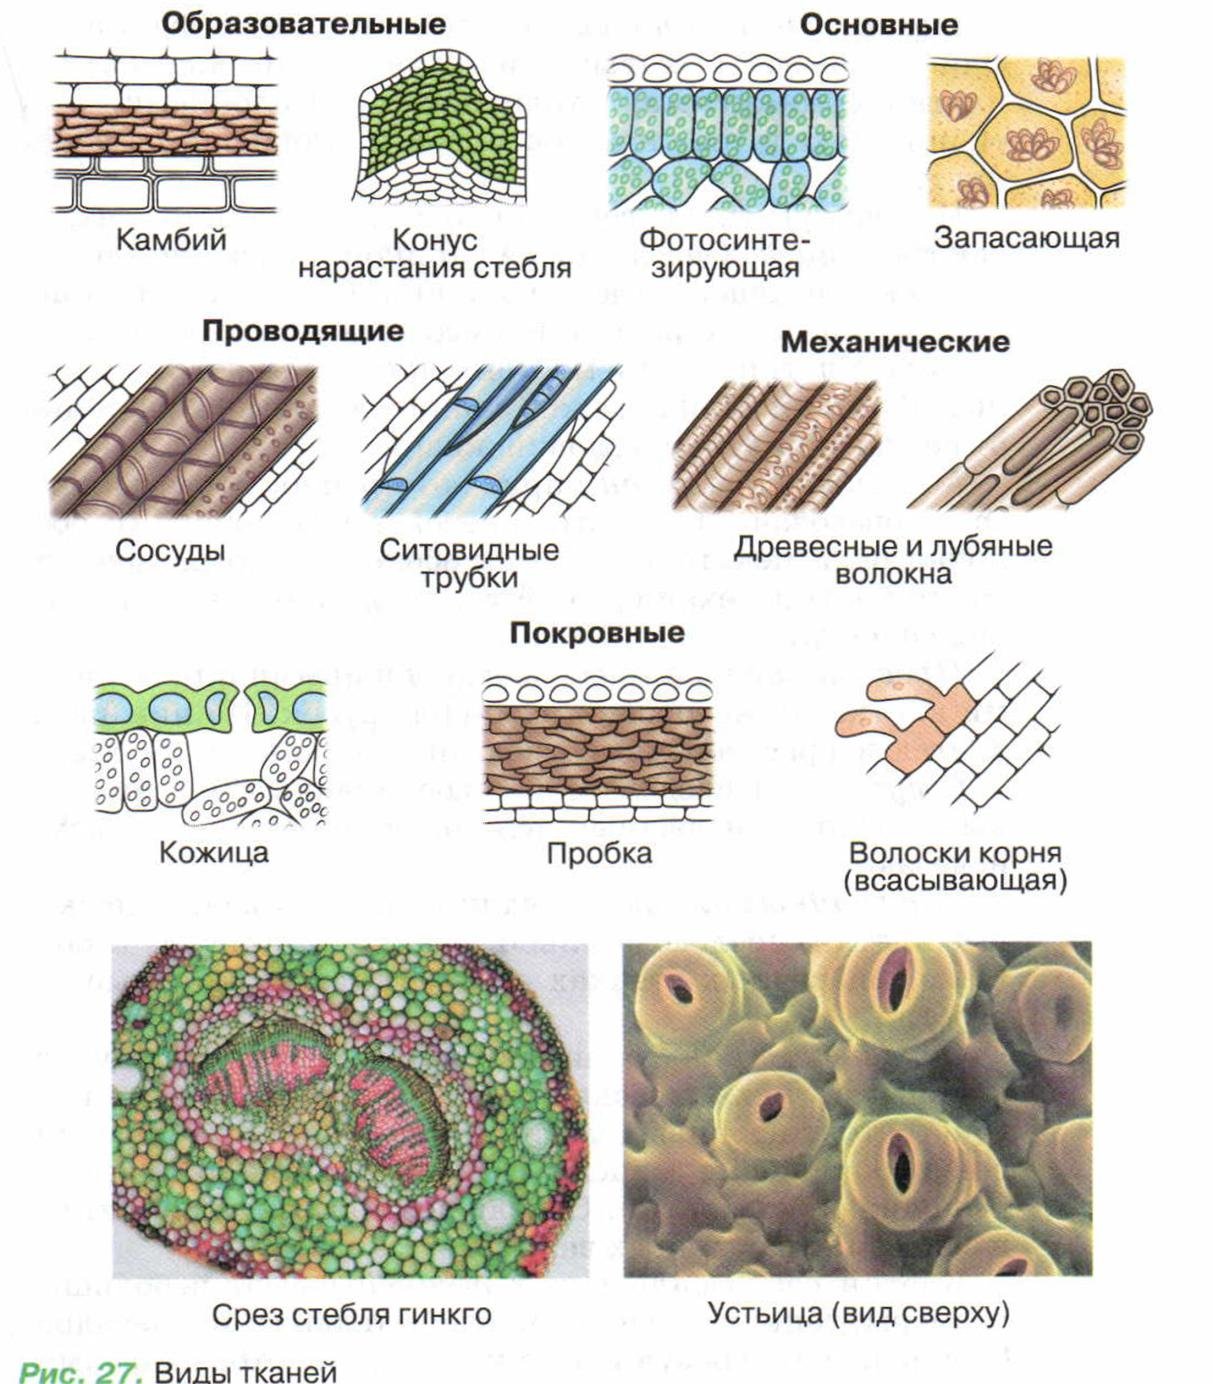 Ткани растений и их части. Строение растительных тканей 6 класс биология. Клеточное строение основной ткани растений. Схема растительной ткани биология. Типы тканей растений и их функции.